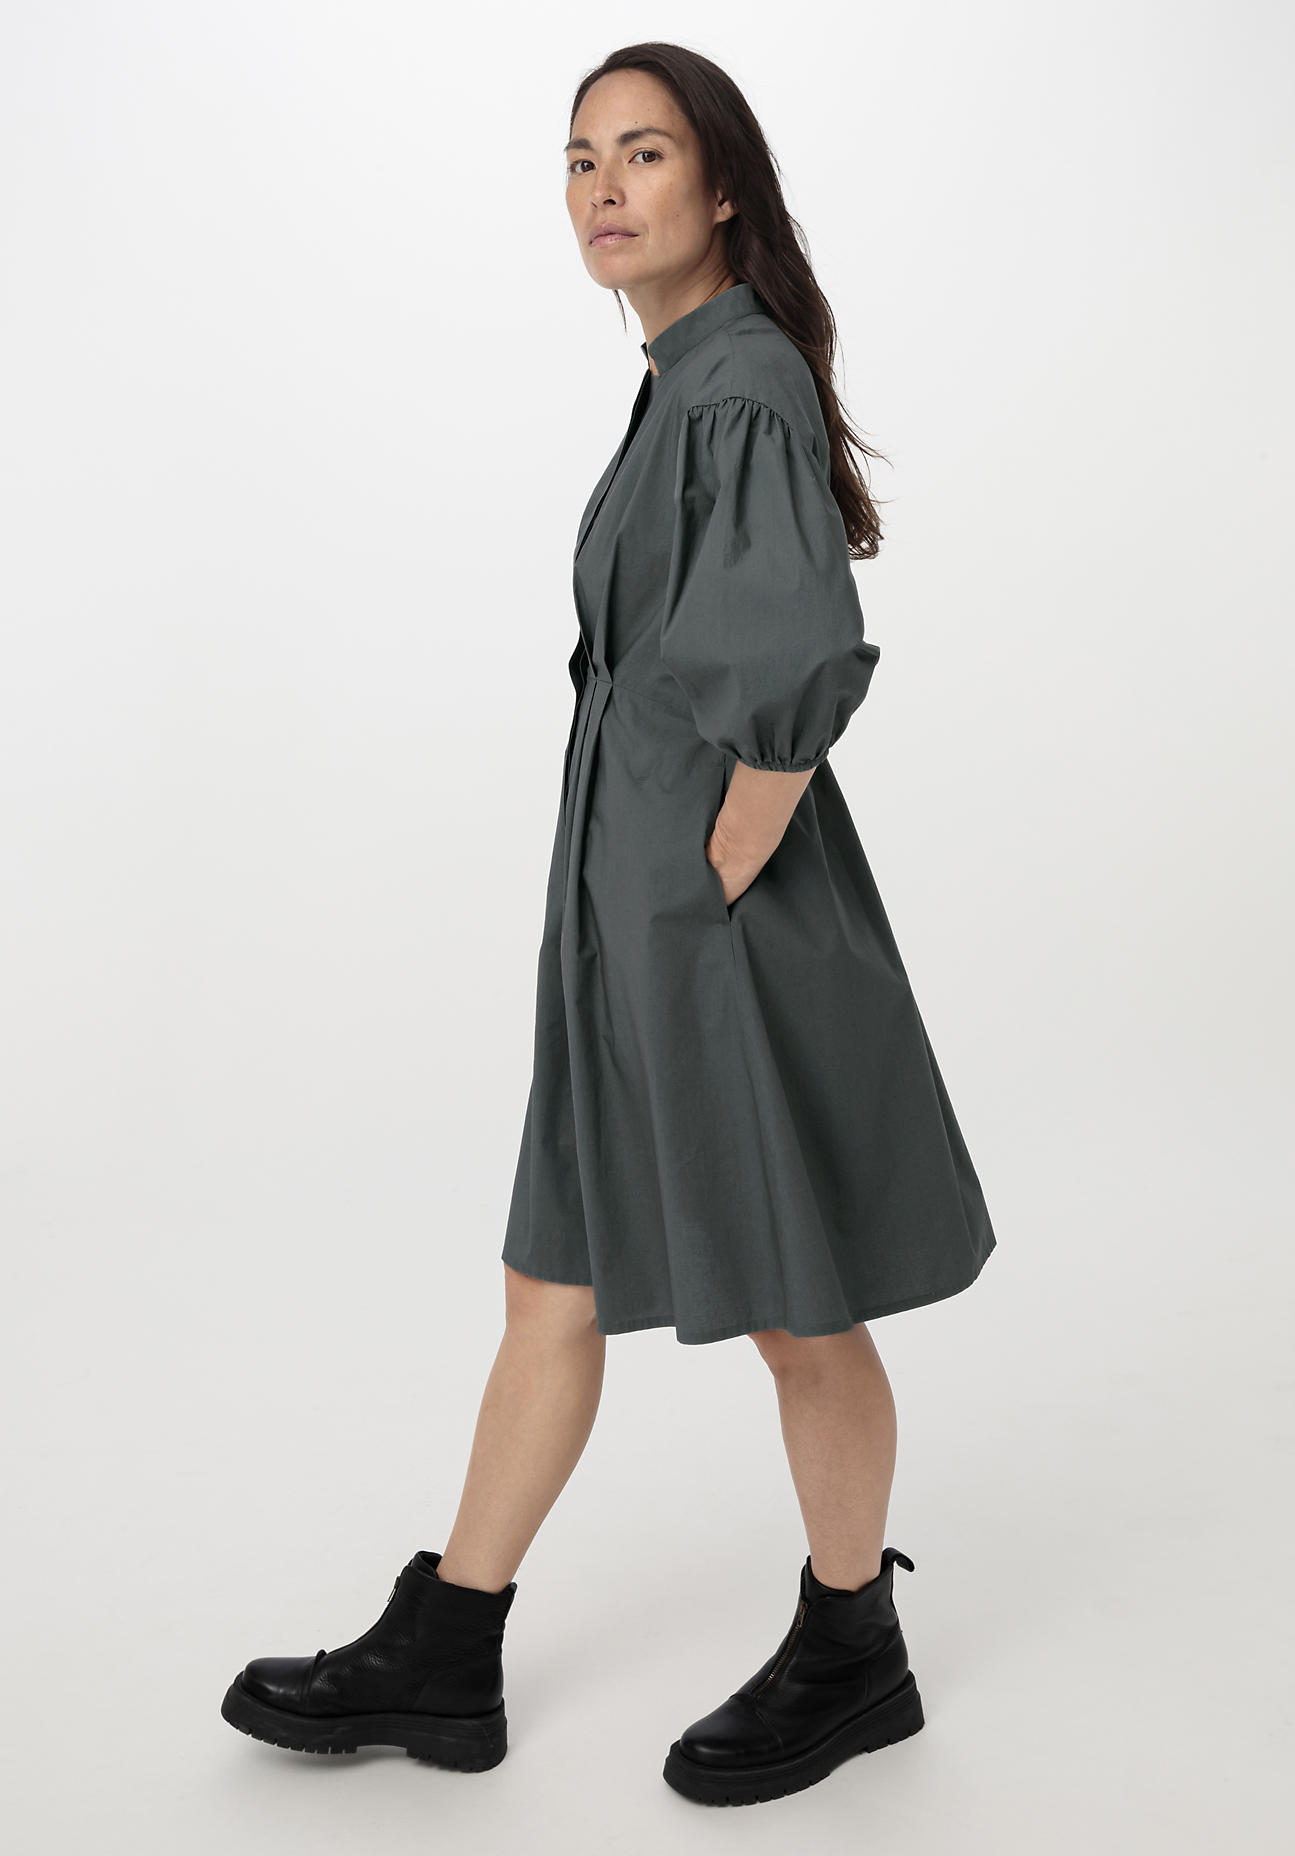 hessnatur Damen Kleid aus Bio-Baumwolle - grün - Größe 38